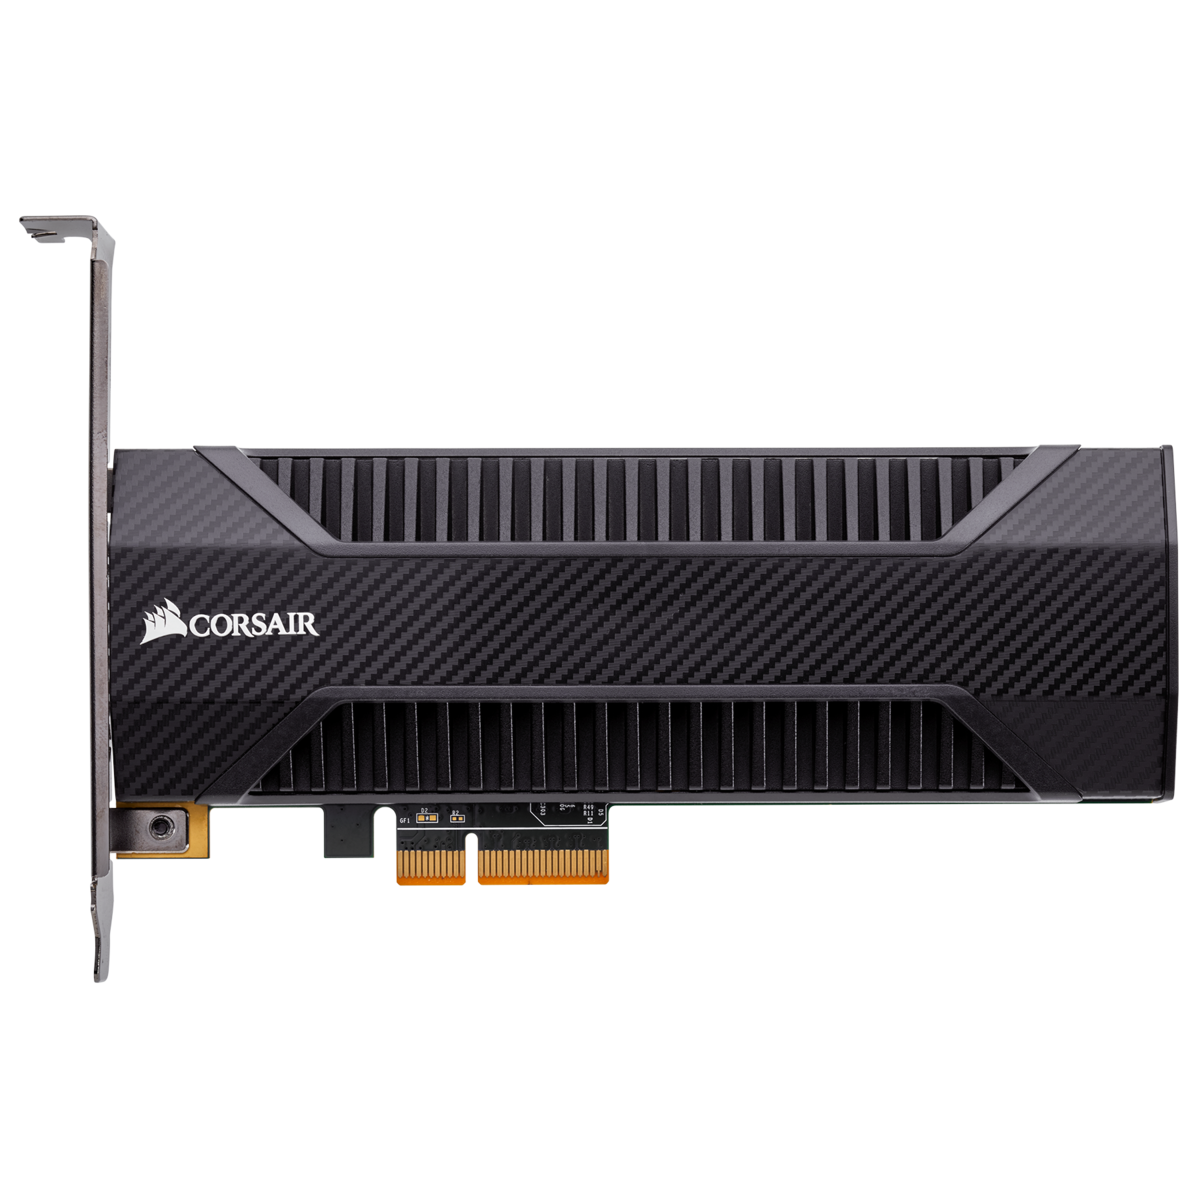 CORSAIR Neutron Series NX500 800GB NVMe PCIe AIC 固態硬碟